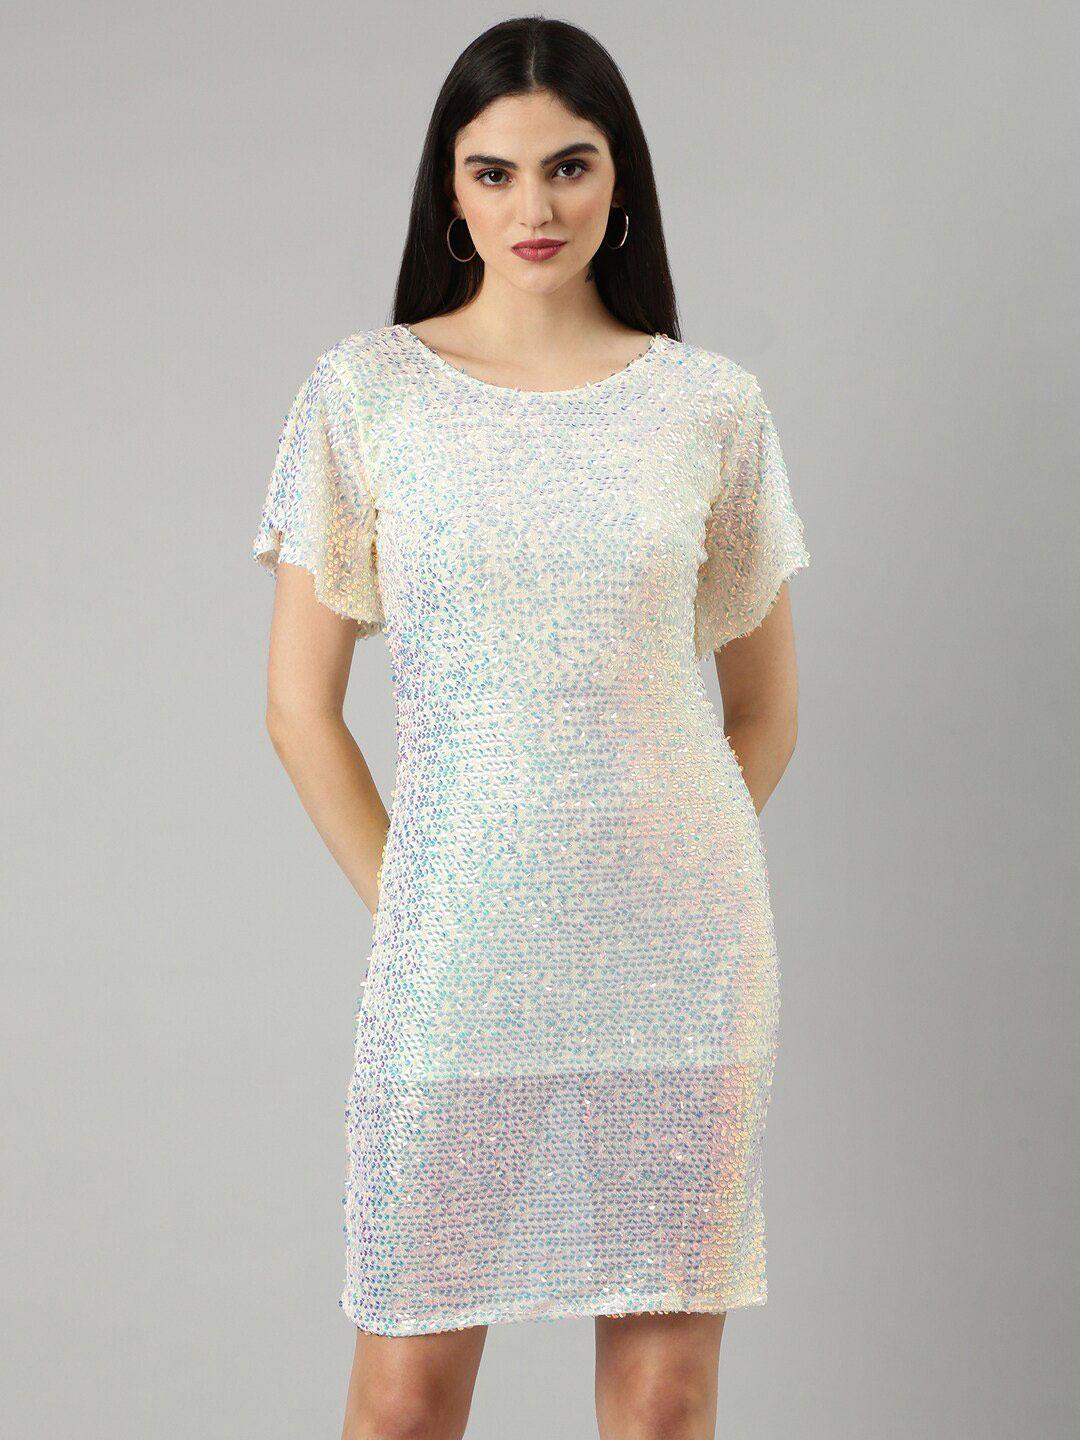 showoff embellished sequined flutter sleeves net a-line dress